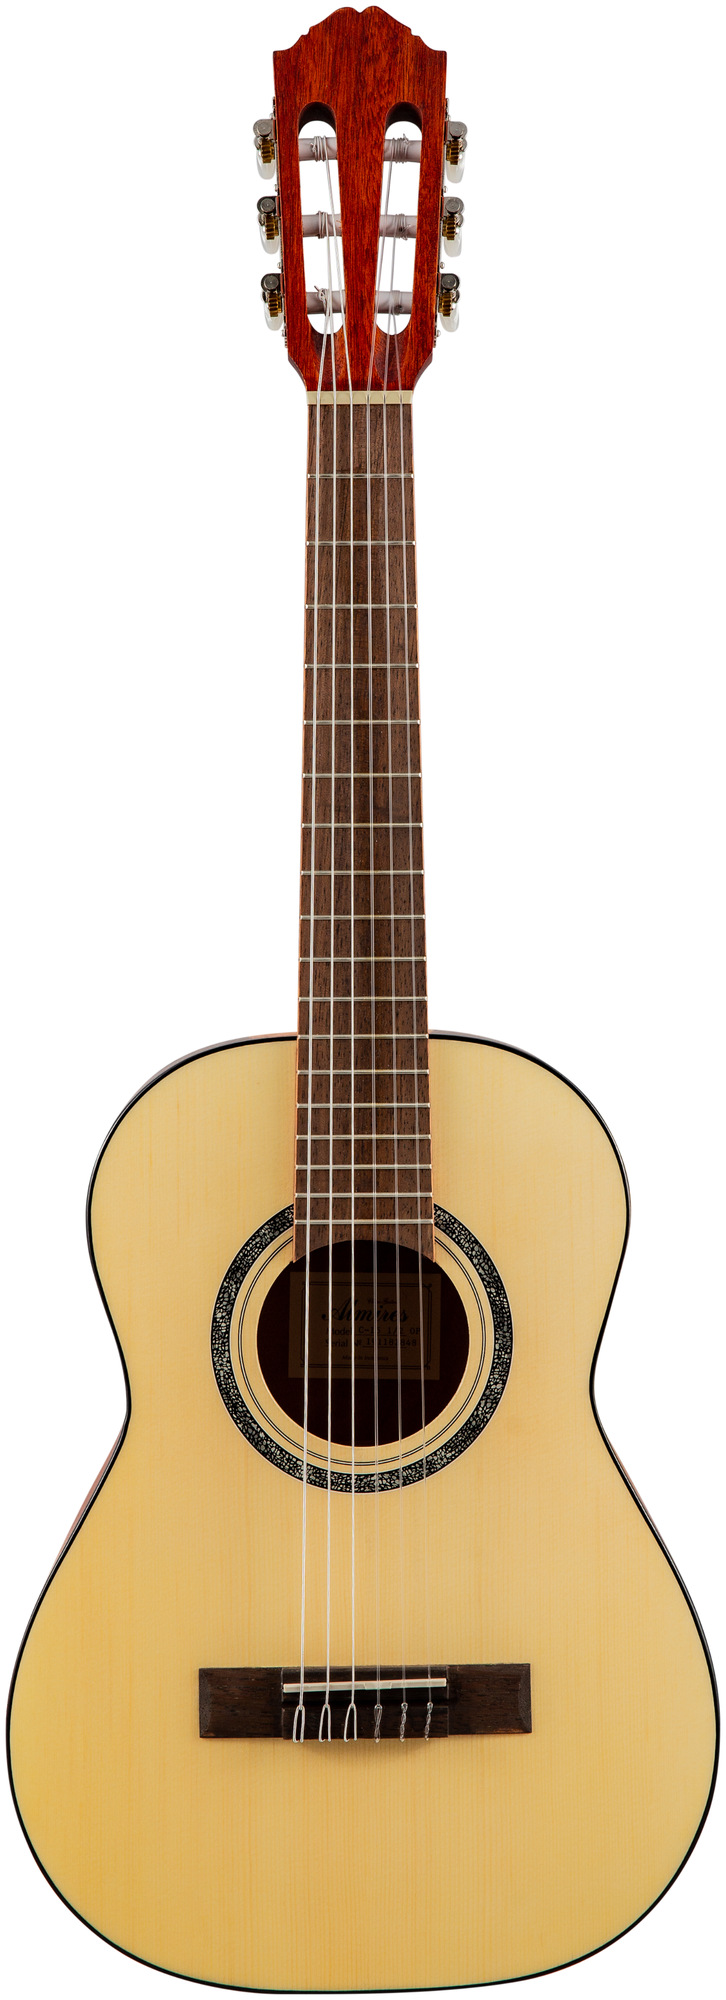 Гитара классическая ALMIRES C-15 1/2 OP - классическая гитара 1/2, верхн. дека-ель, корпус-красное дерево, цвет натуральный C-15OP1/2/DNT-58521